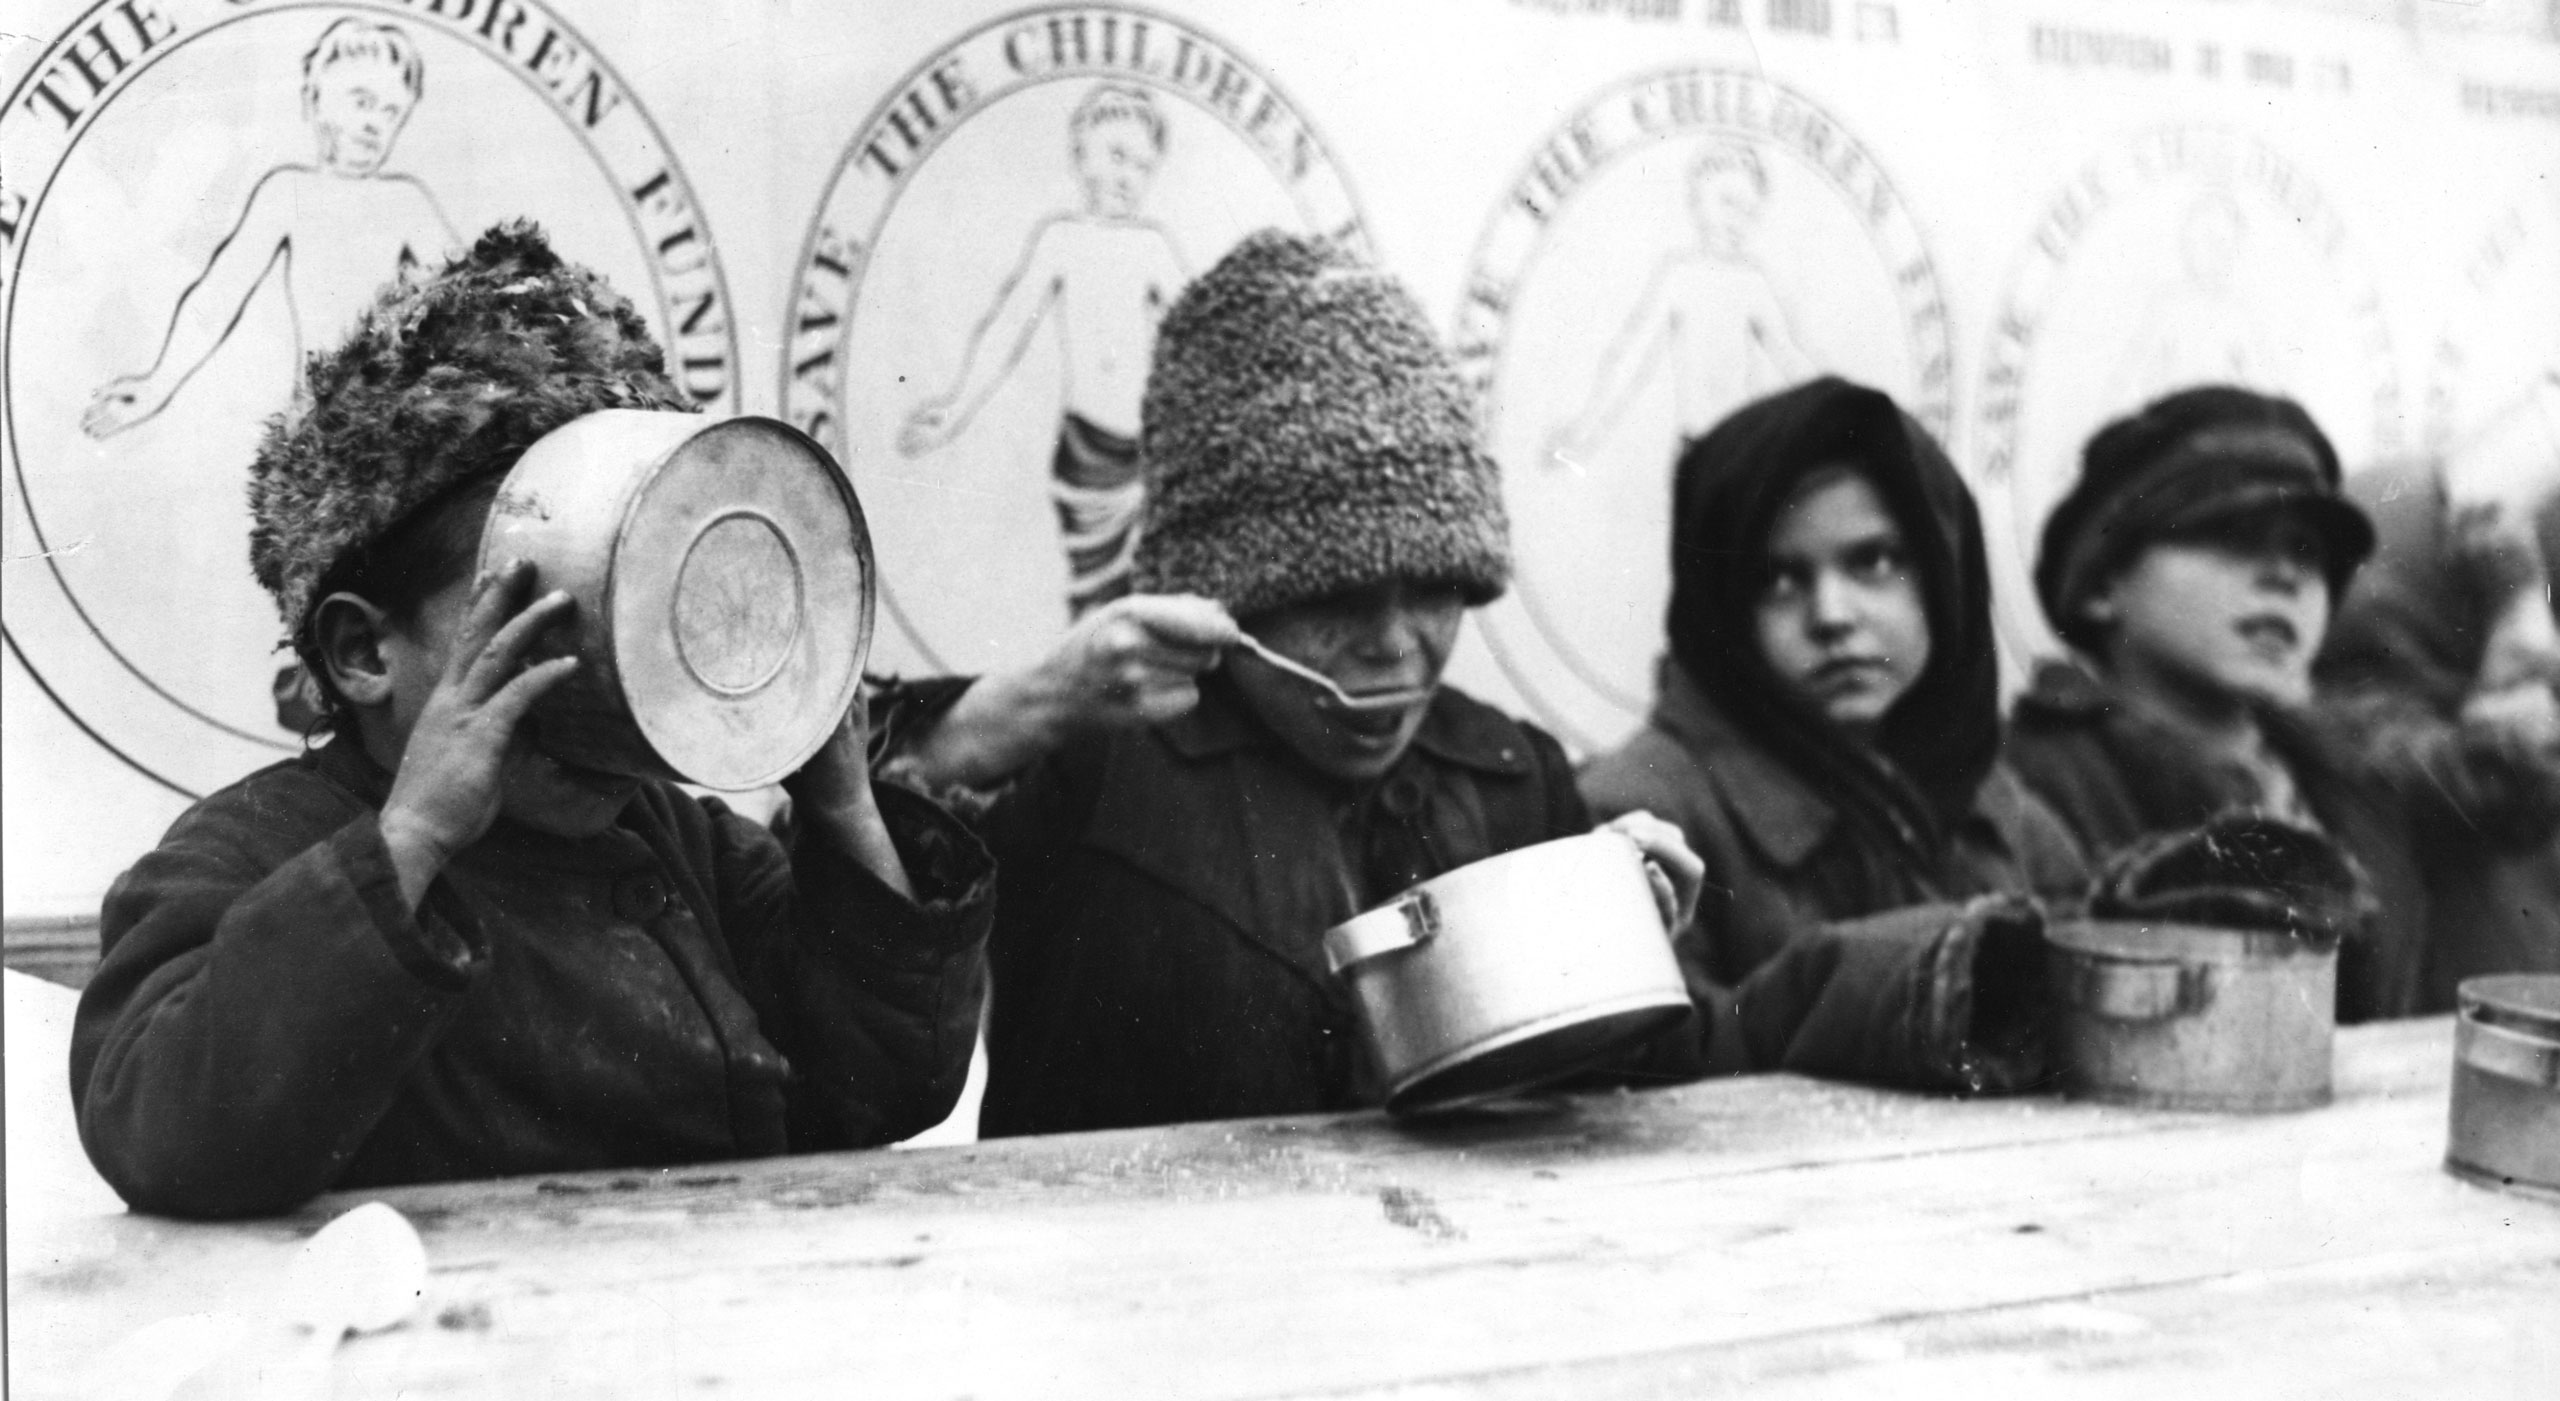 Auch während der großen Hungersnot in Russland organisierte Save the Children Essensausgabe und versorgte über 650.000 Kinder und Erwachsene in Suppenküchen (1921).